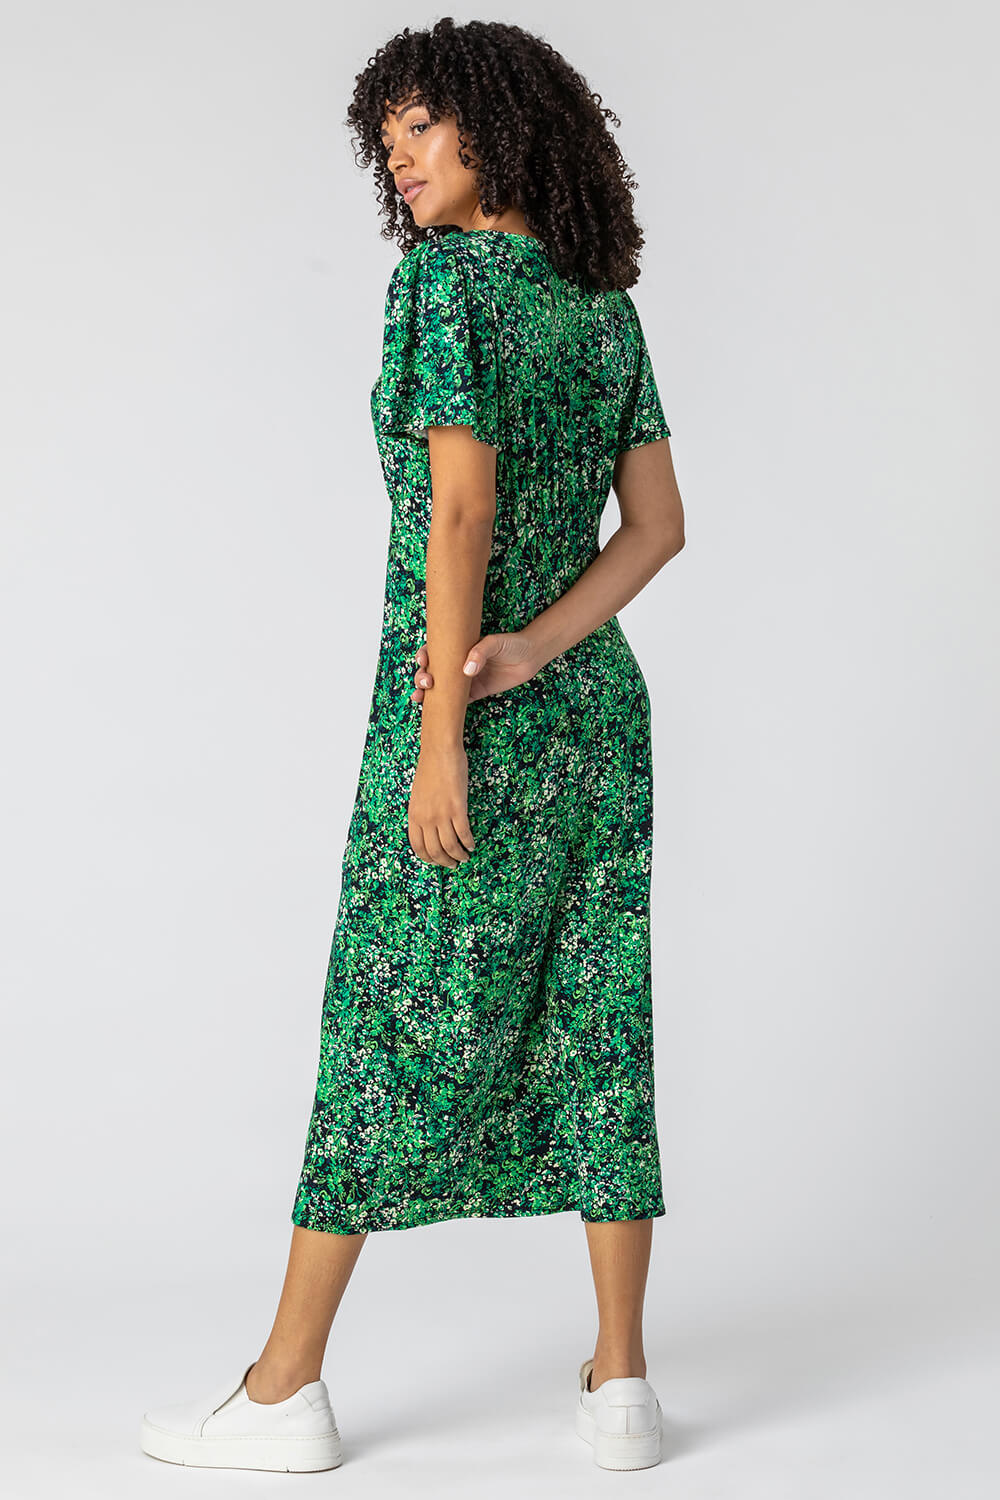 Green Floral Print Side Split Dress, Image 2 of 4